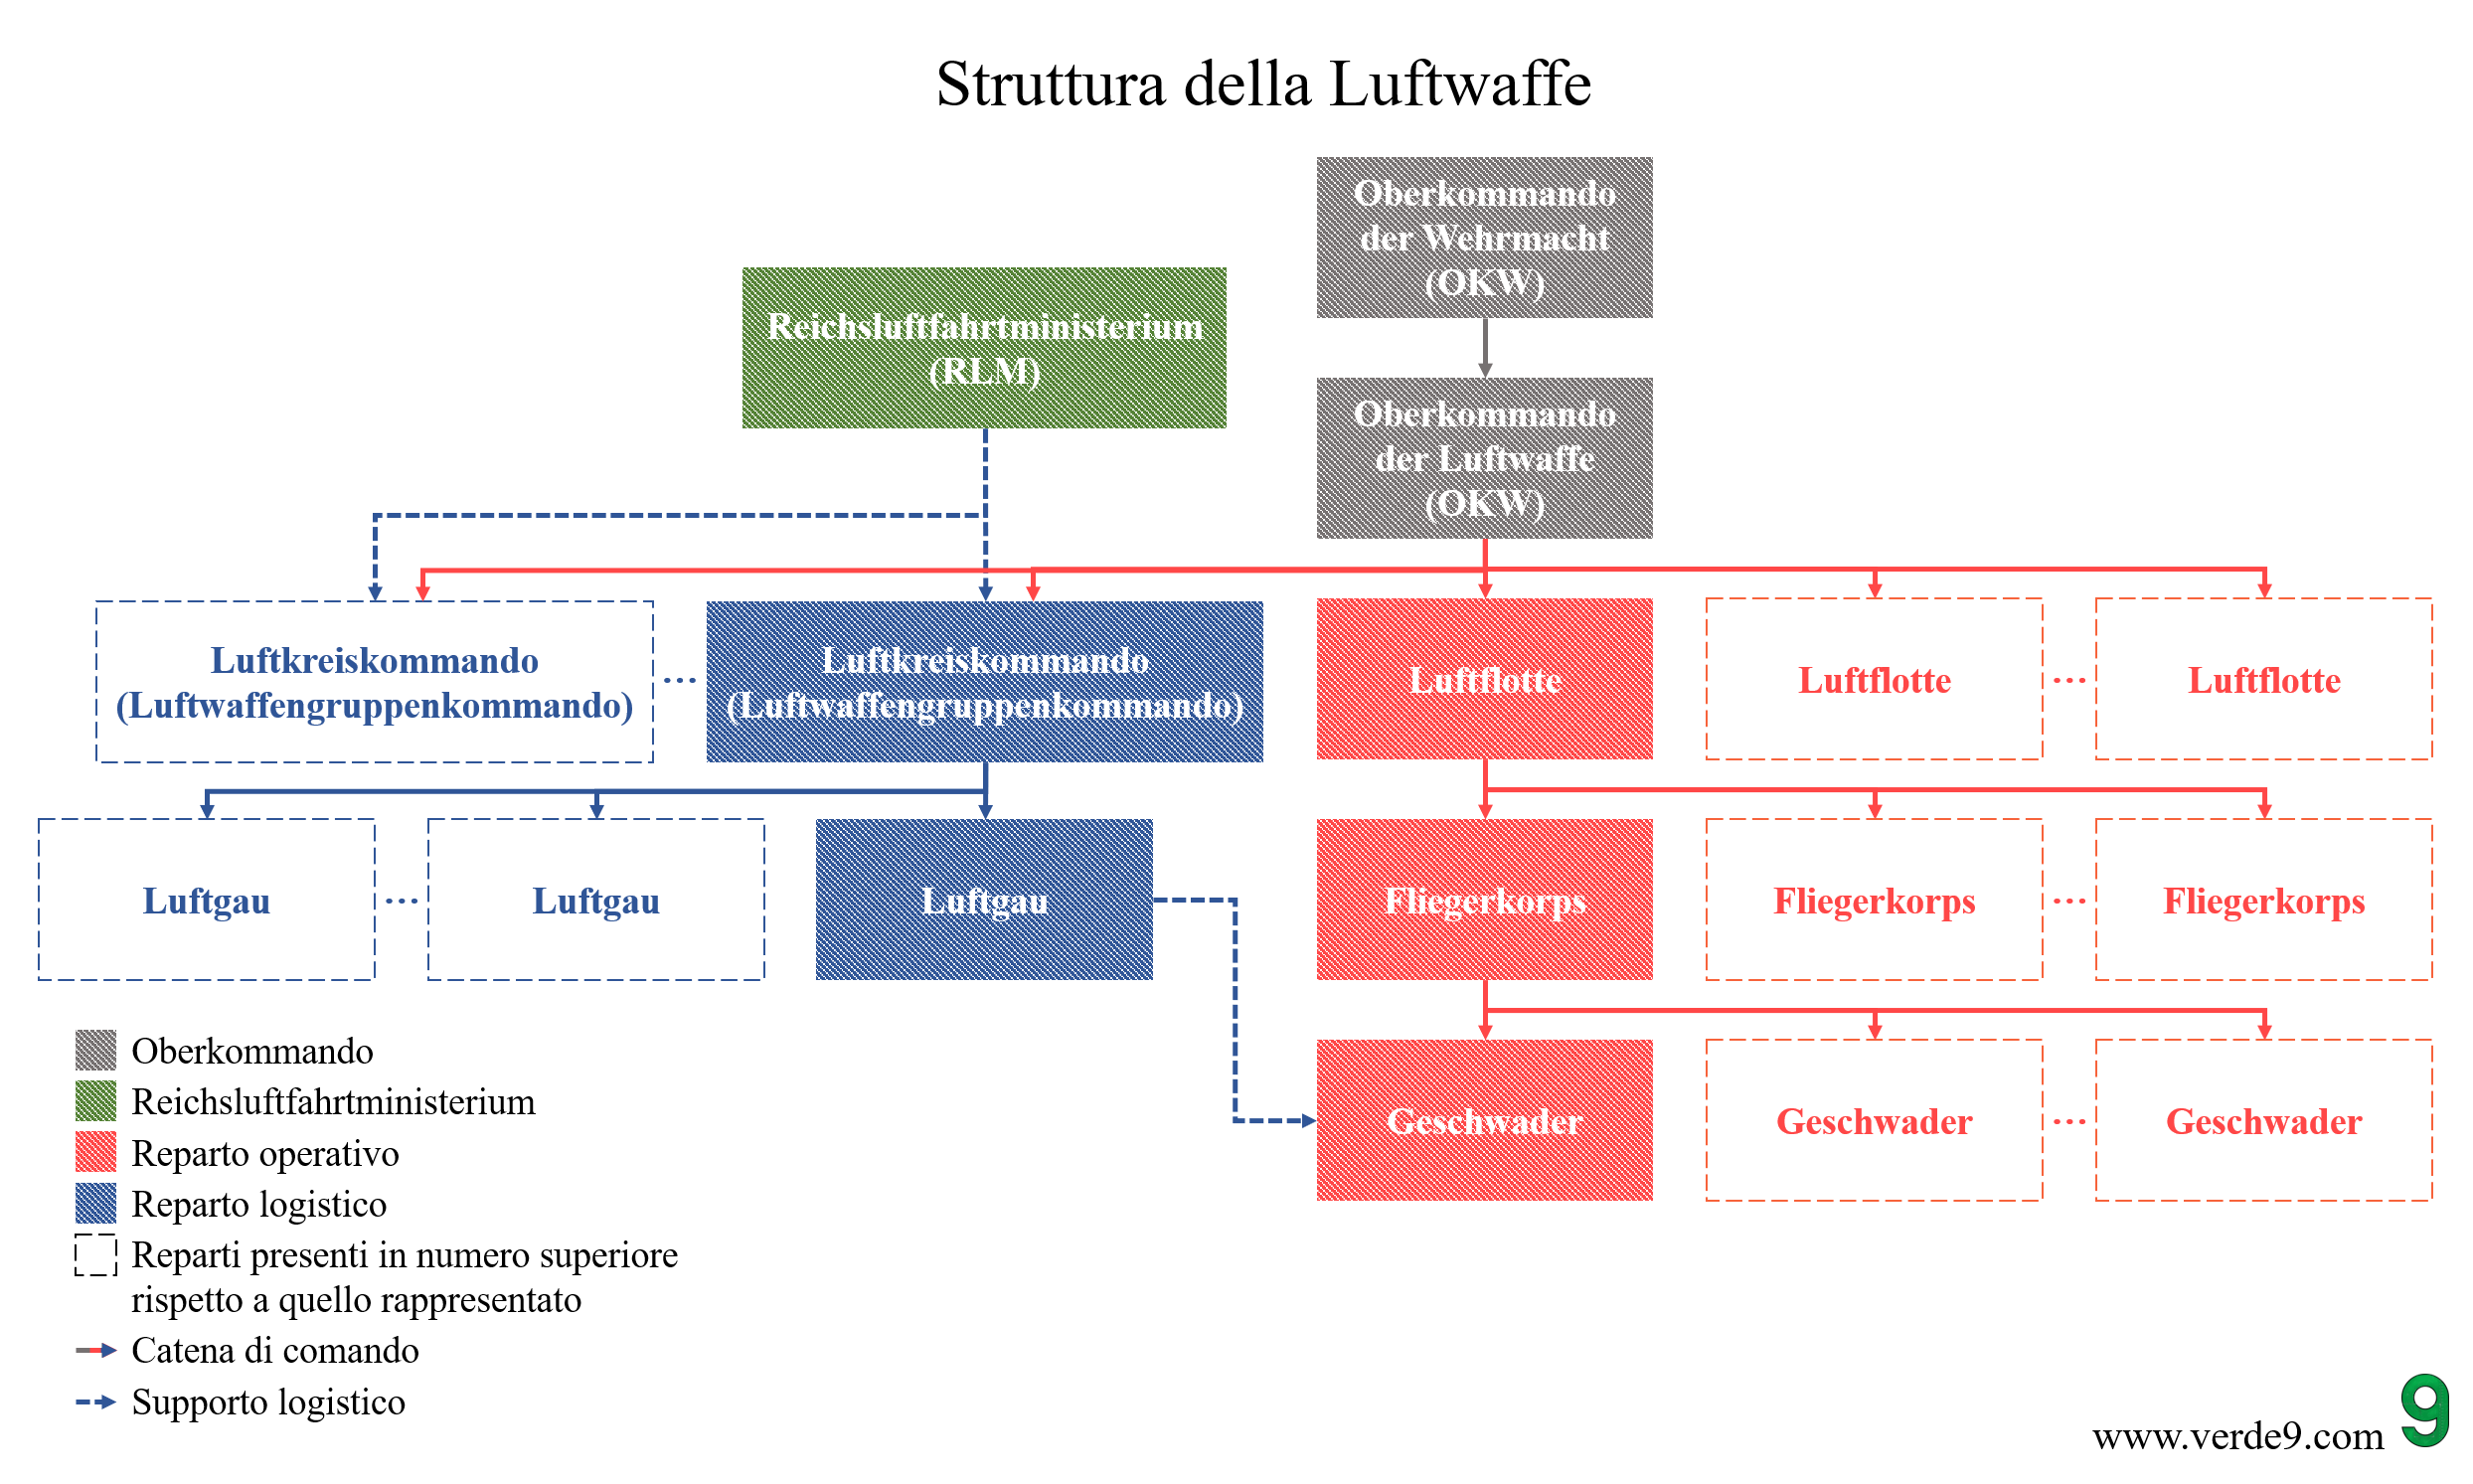 La struttura della Luftwaffe a livello dei grandi reparti operativi e logistici